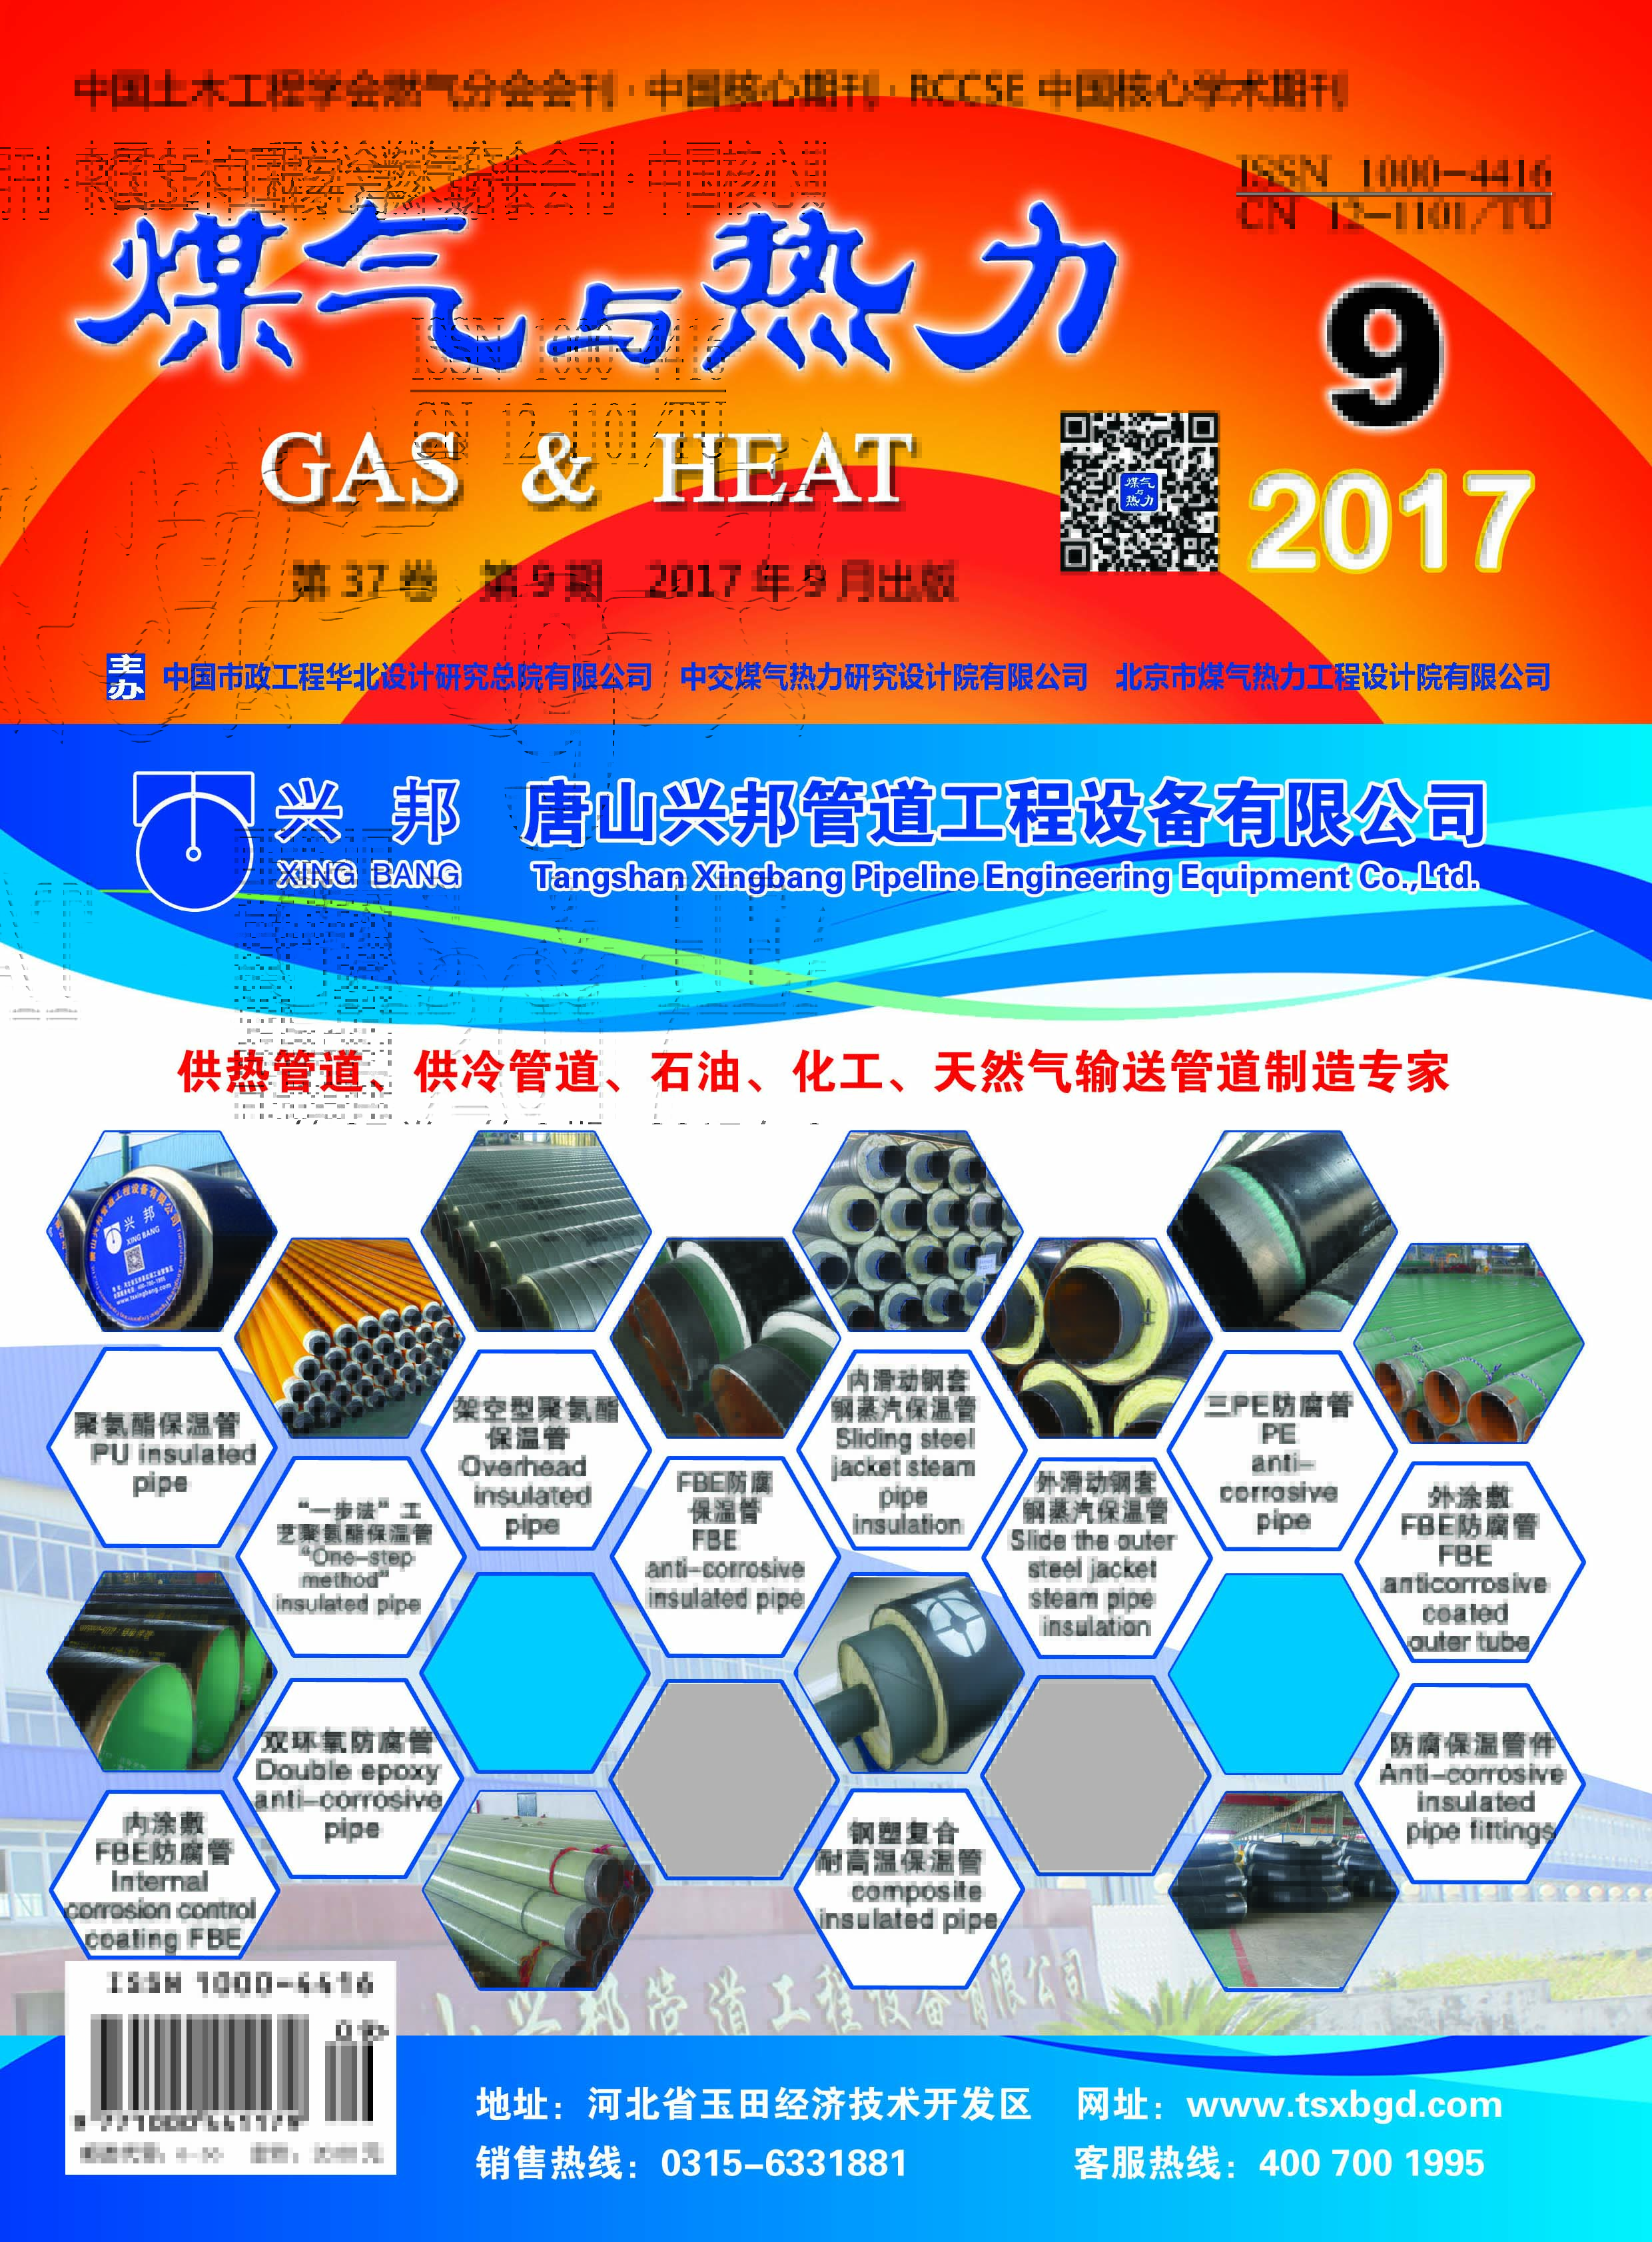 《煤气与热力》2017年9月刊